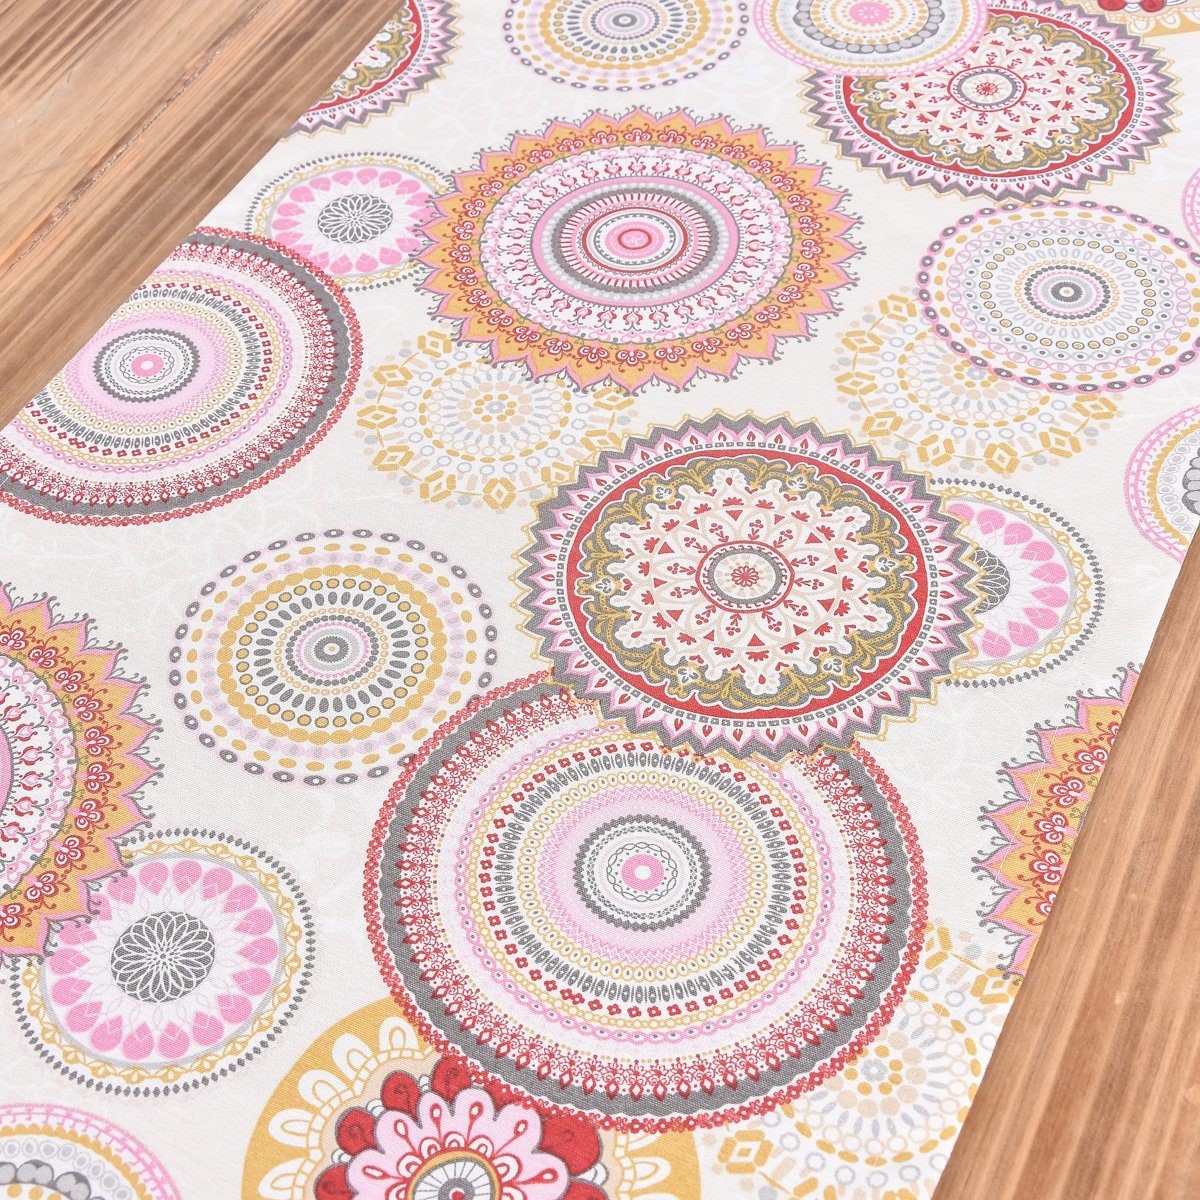 SCHÖNER bunt LEBEN. 40x160cm, Tischläufer Leben Blumen beige Schöner Tischläufer Muster Mandala handmade